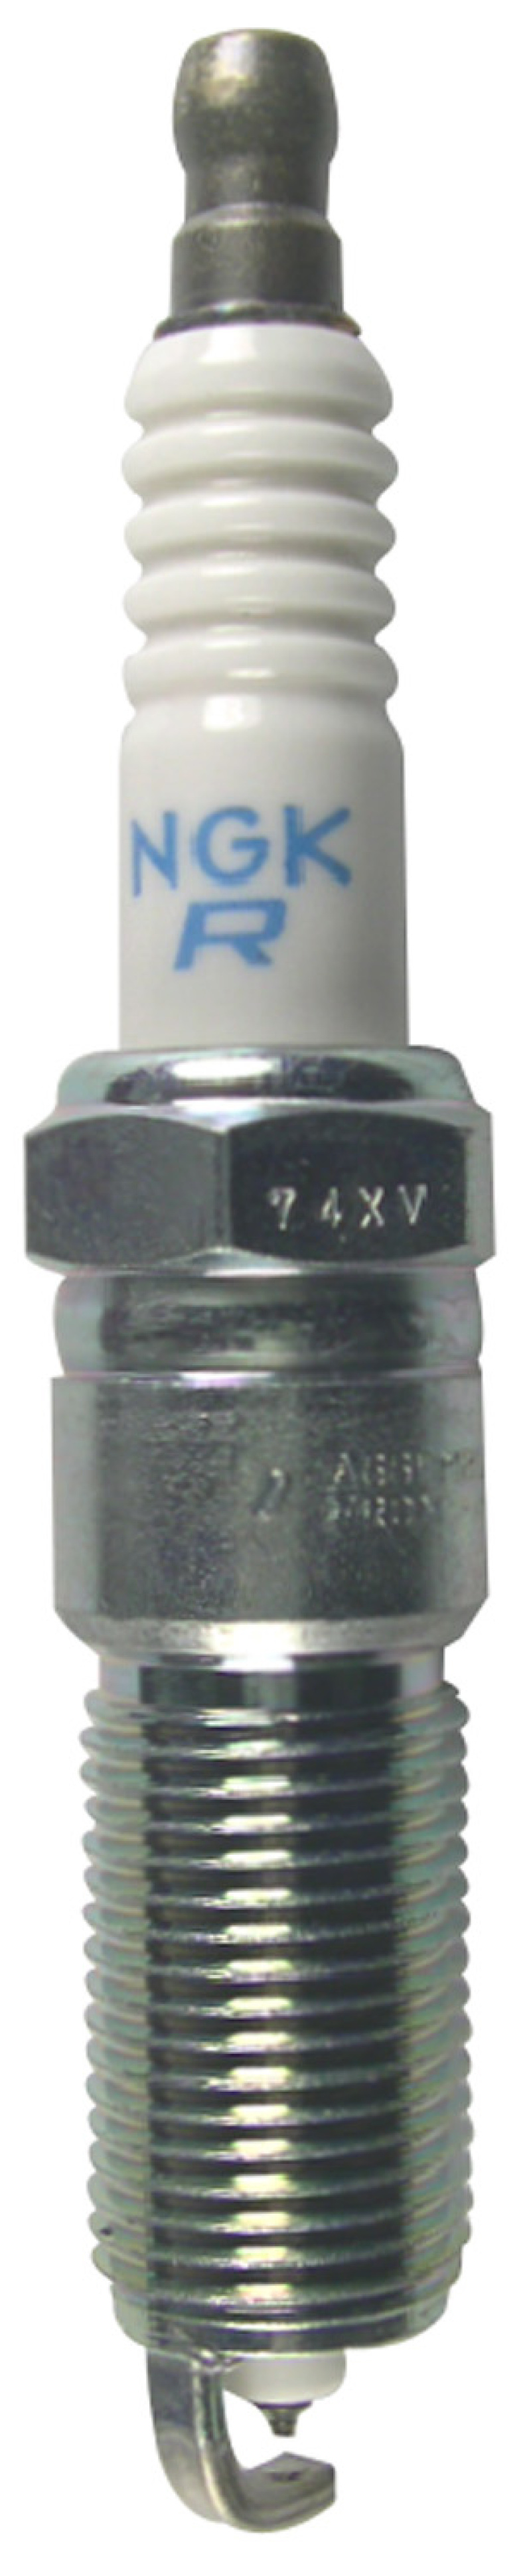 NGK Laser Platinum Spark Plug Box of 4 (LTR6BP13) - 94806